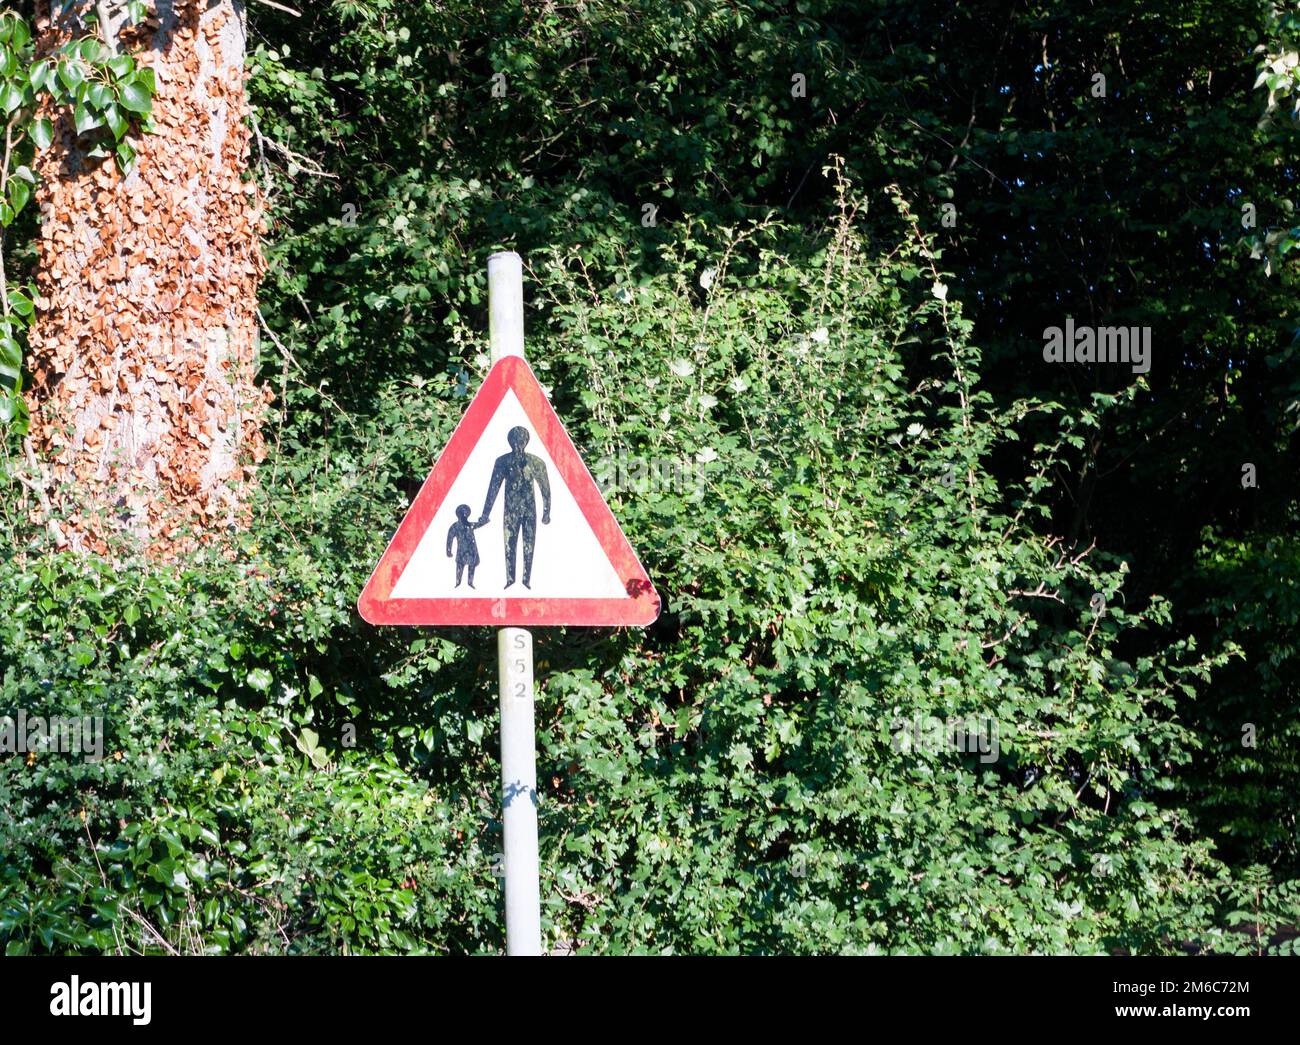 Un panneau de signalisation rouge en forme de triangle avec un avertissement de sécurité pour les hommes et les enfants Banque D'Images